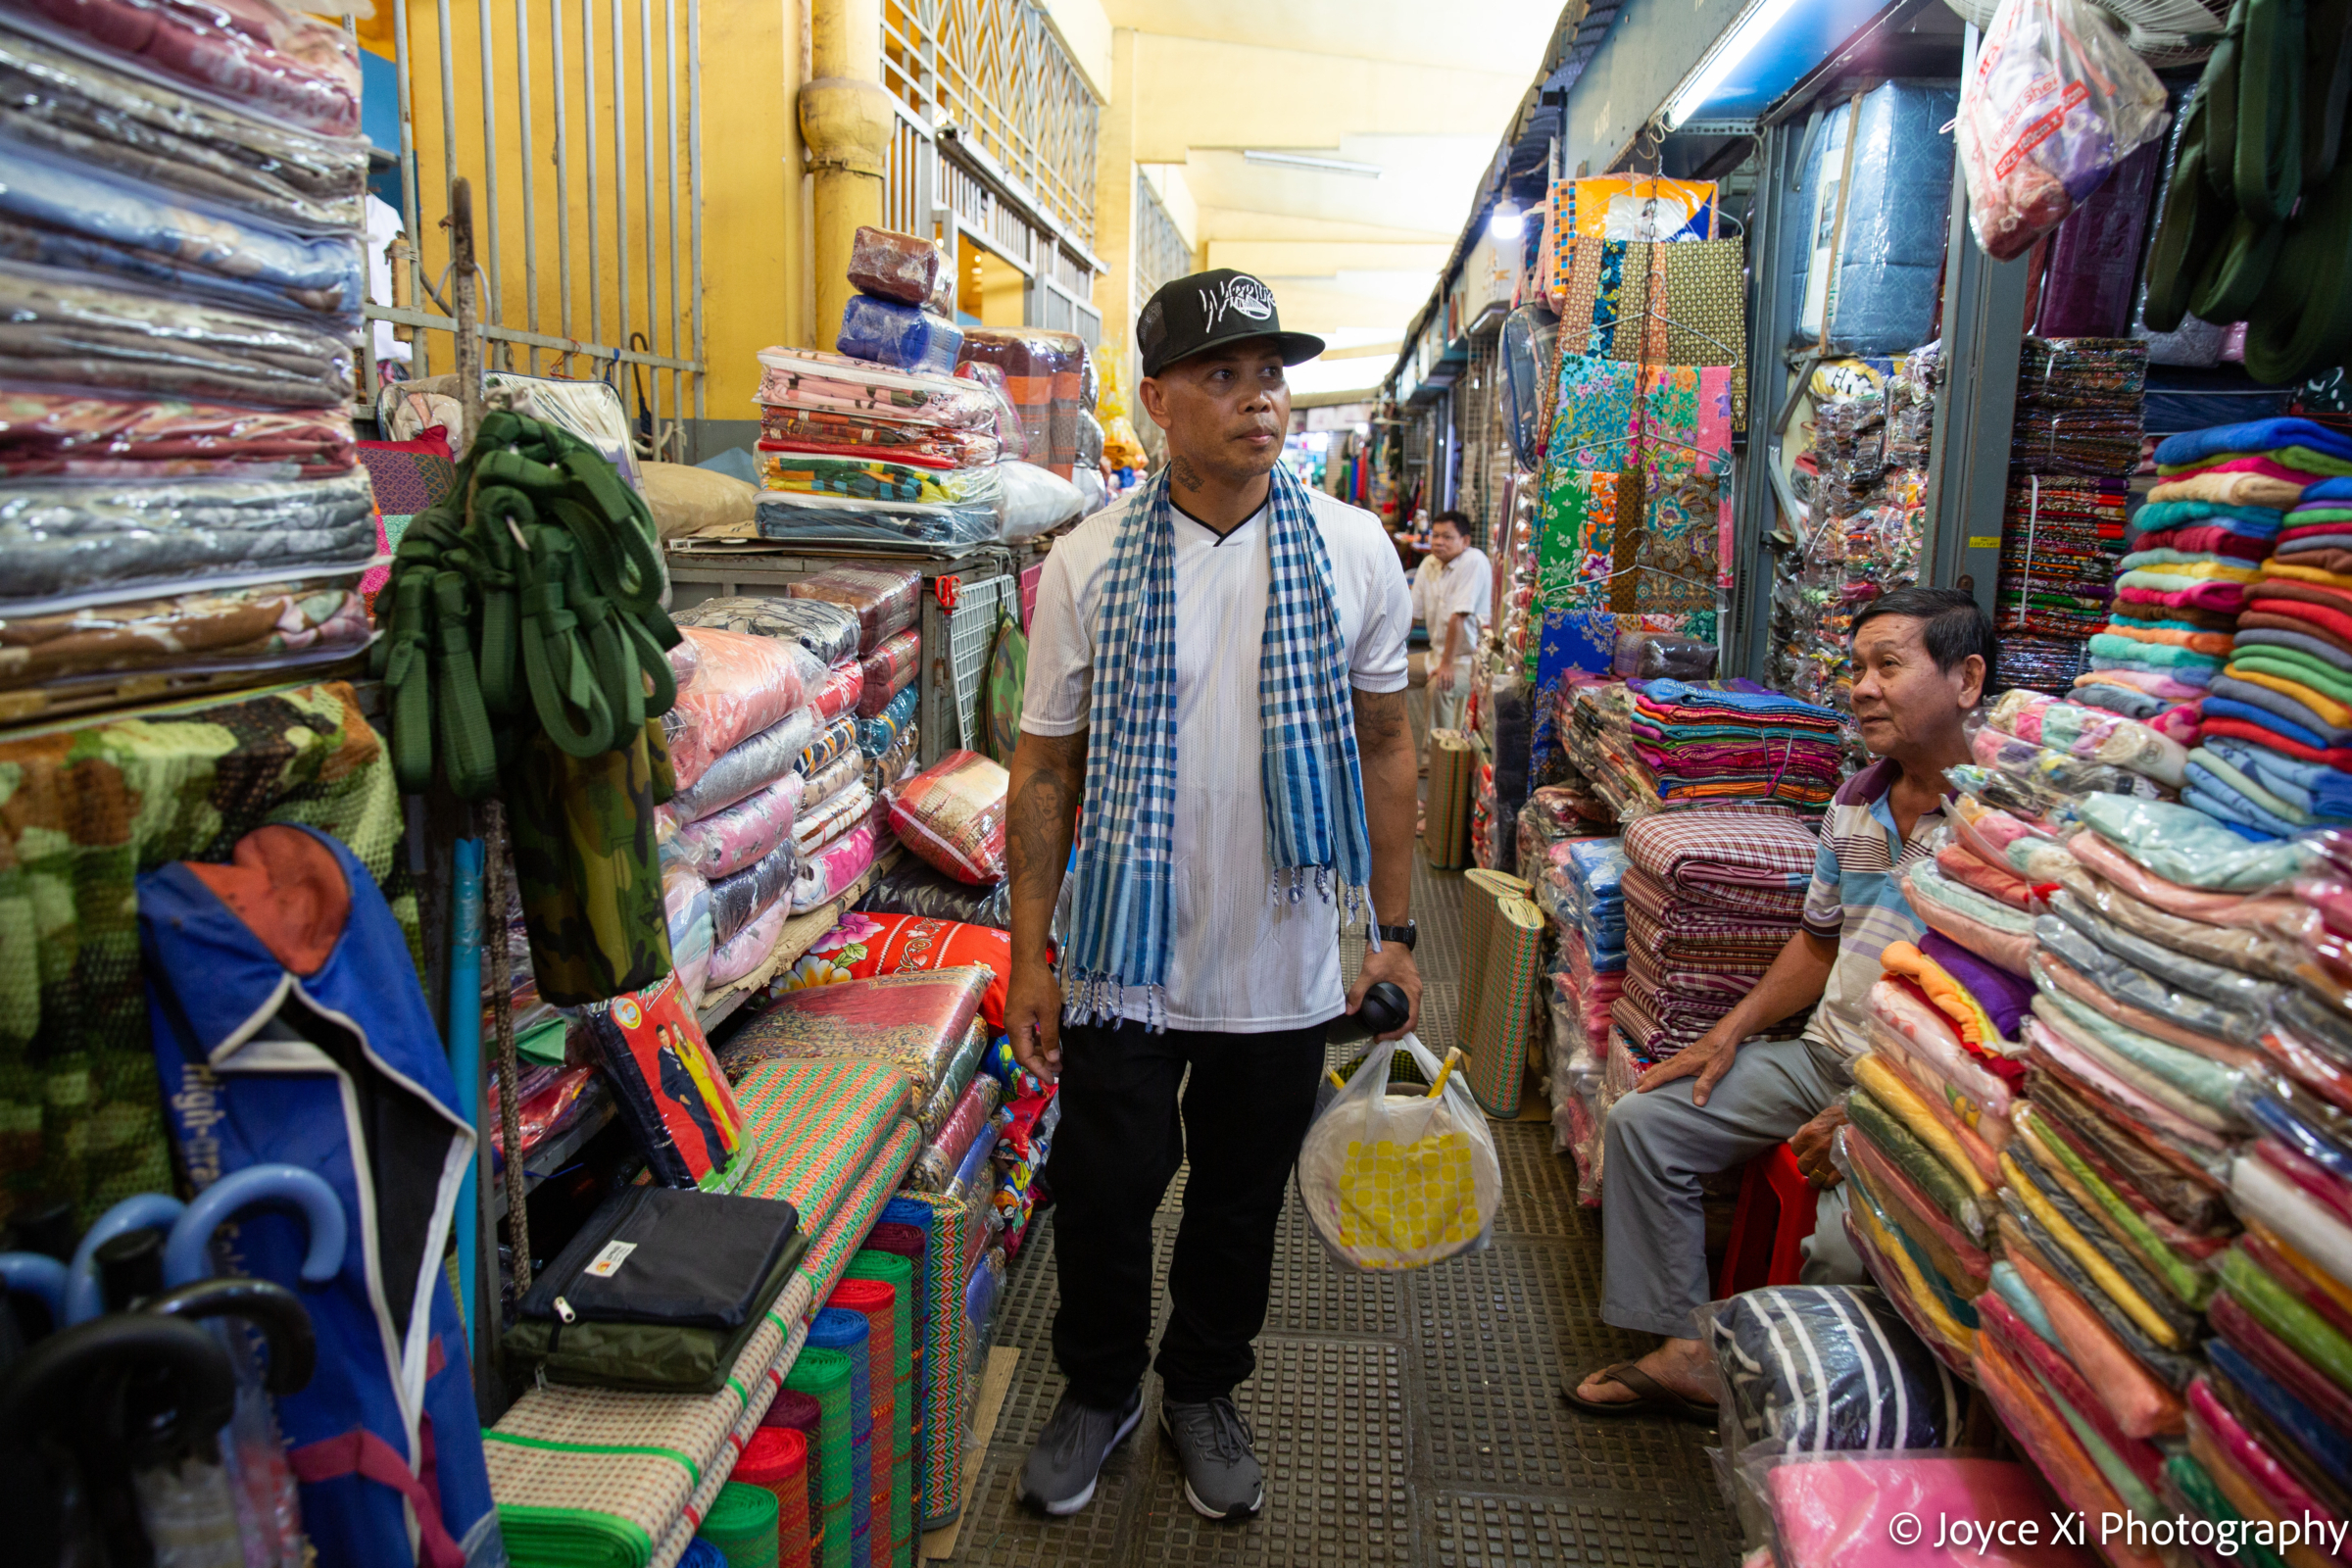 Pheoun walks through a textile bazaar in Cambodia.